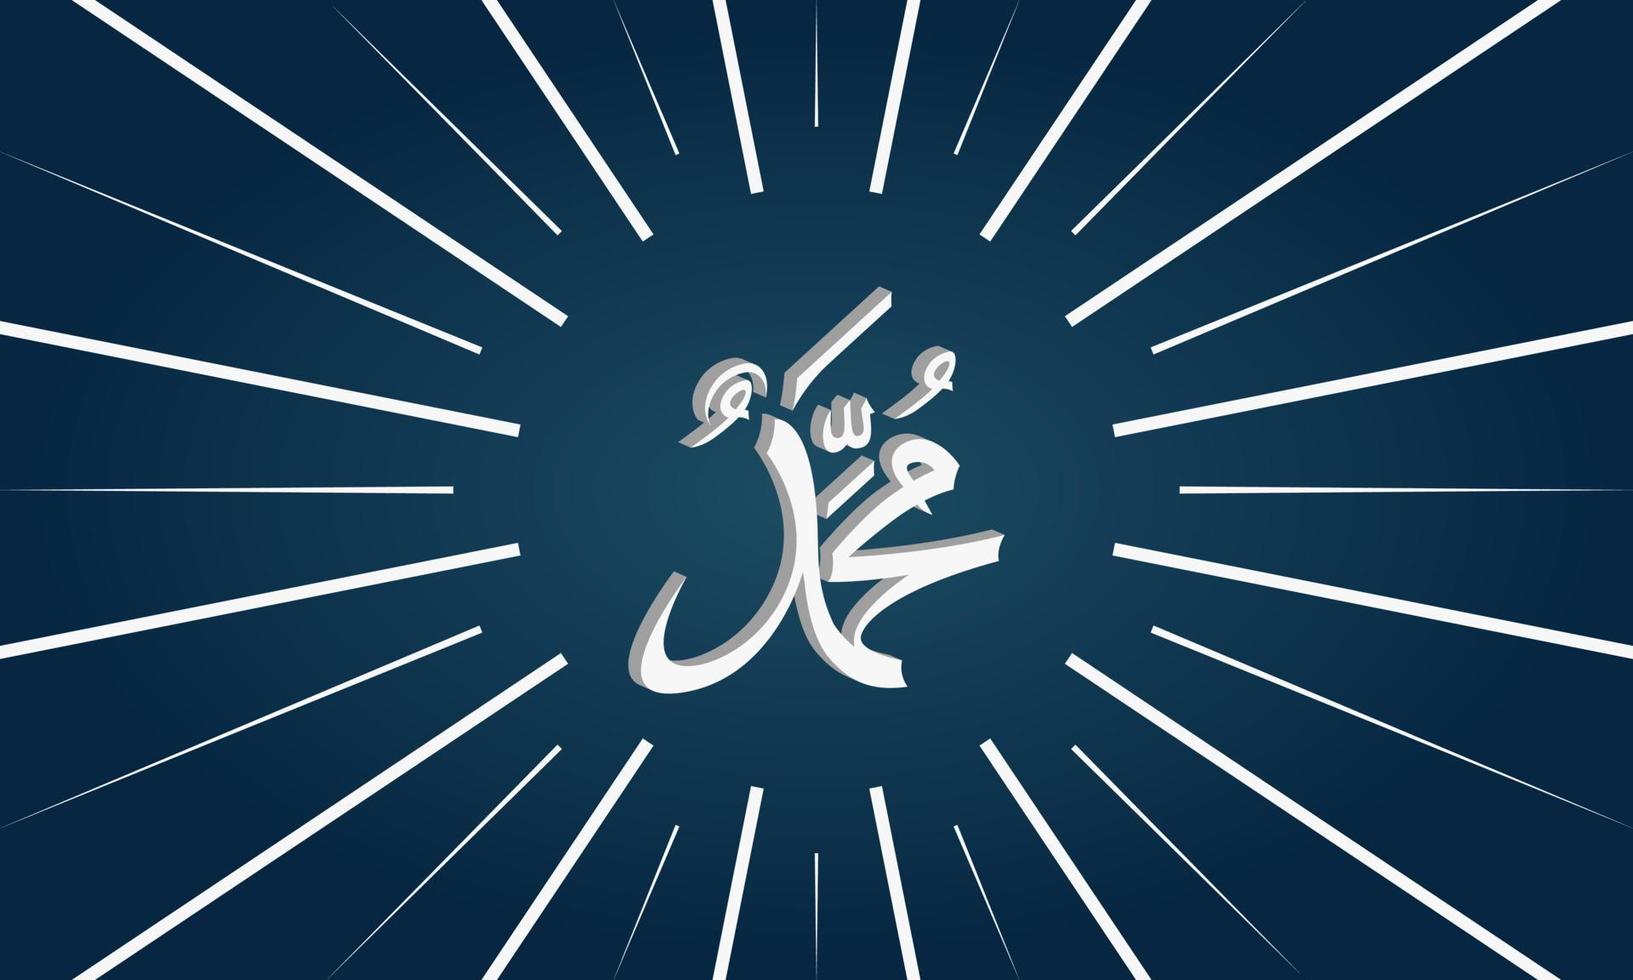 calligraphie prophète muhammad avec éclat. fond bleu. illustration vectorielle. vecteur